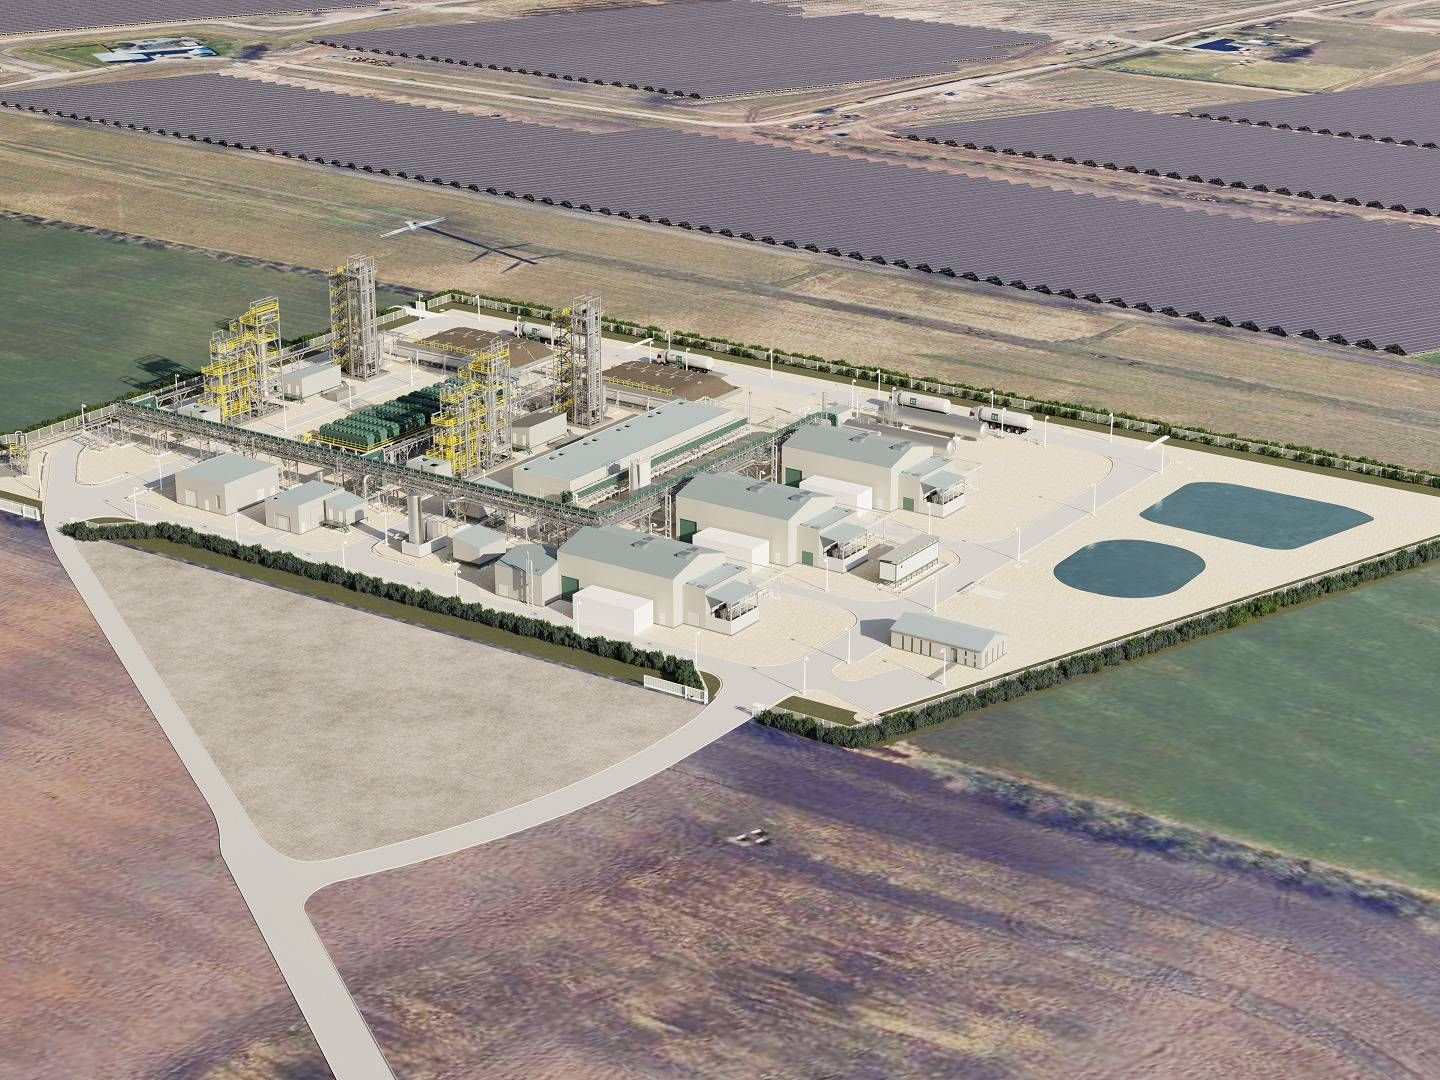 På billedet ses en visualisering af European Energys danske e-metanolsprojekt ved Kassø, som udvikleren er ved at færdiggøre. Anlægget står til at blive verdens største e-metanolanlæg med en produktion på 32.000 tons e-metanol om året. | Foto: European Energy/pr.